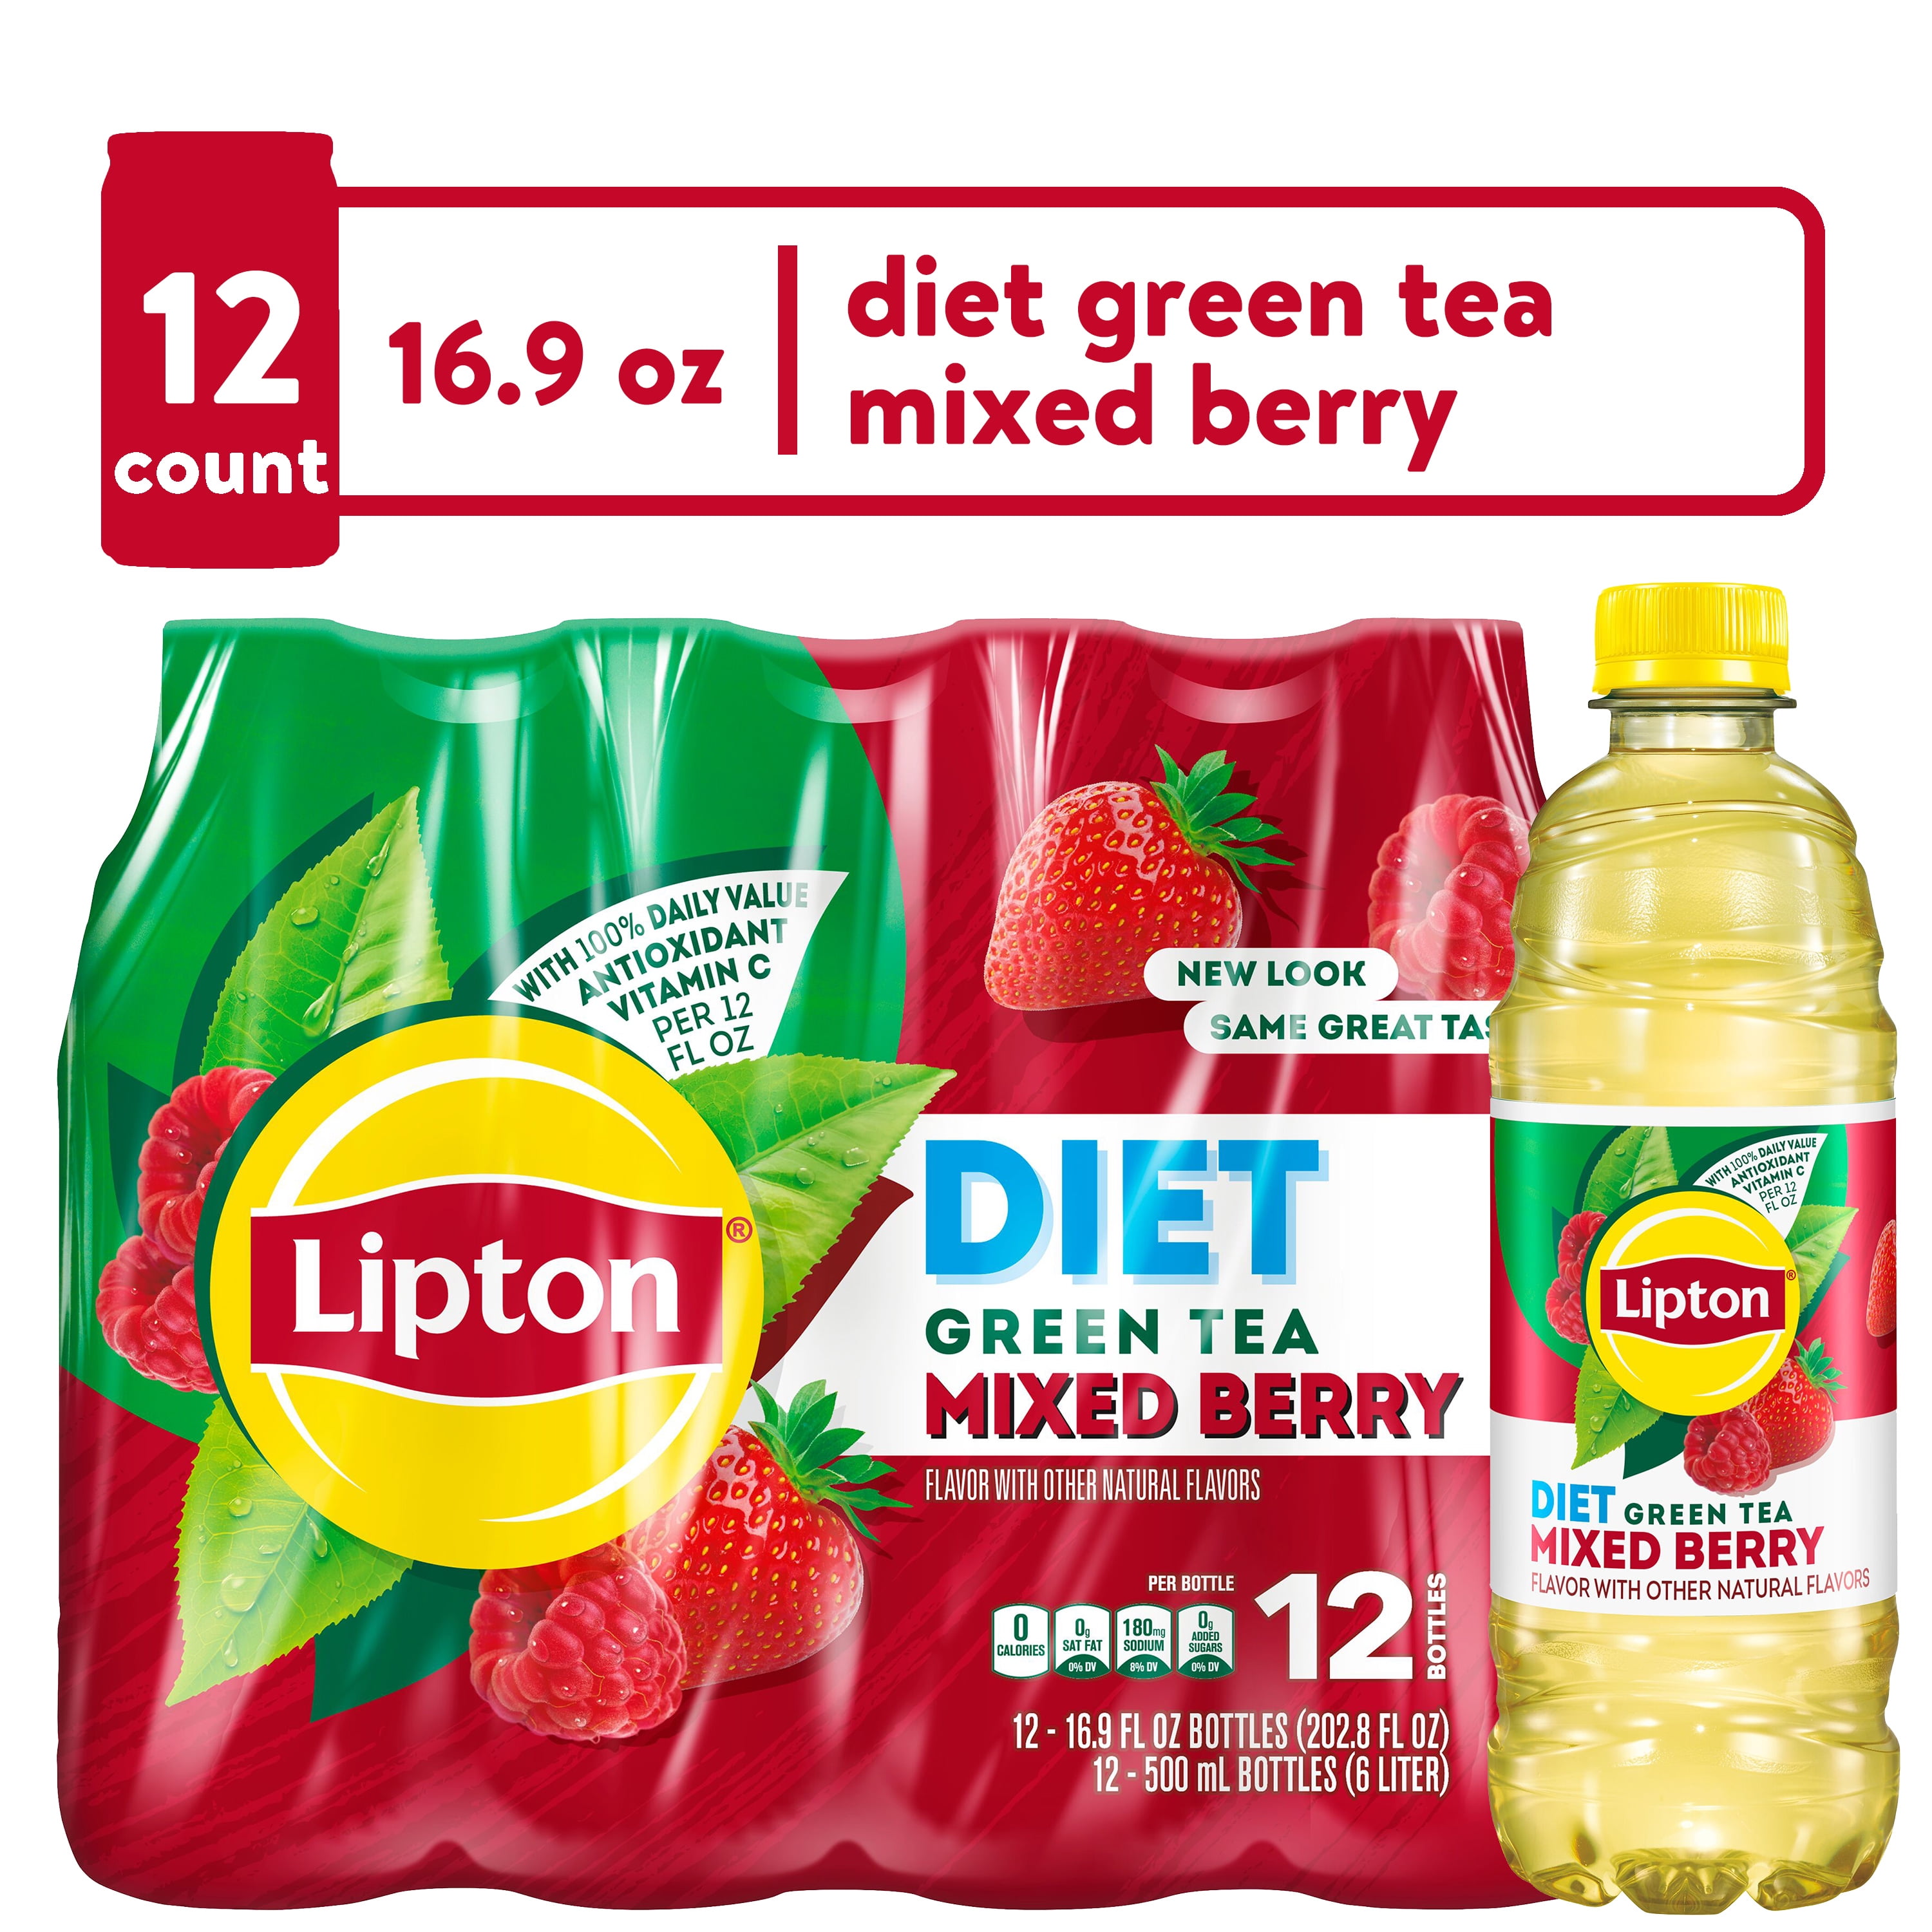 Lipton Lemon Iced Tea, 16.9 fl oz, 12 Pack Bottles